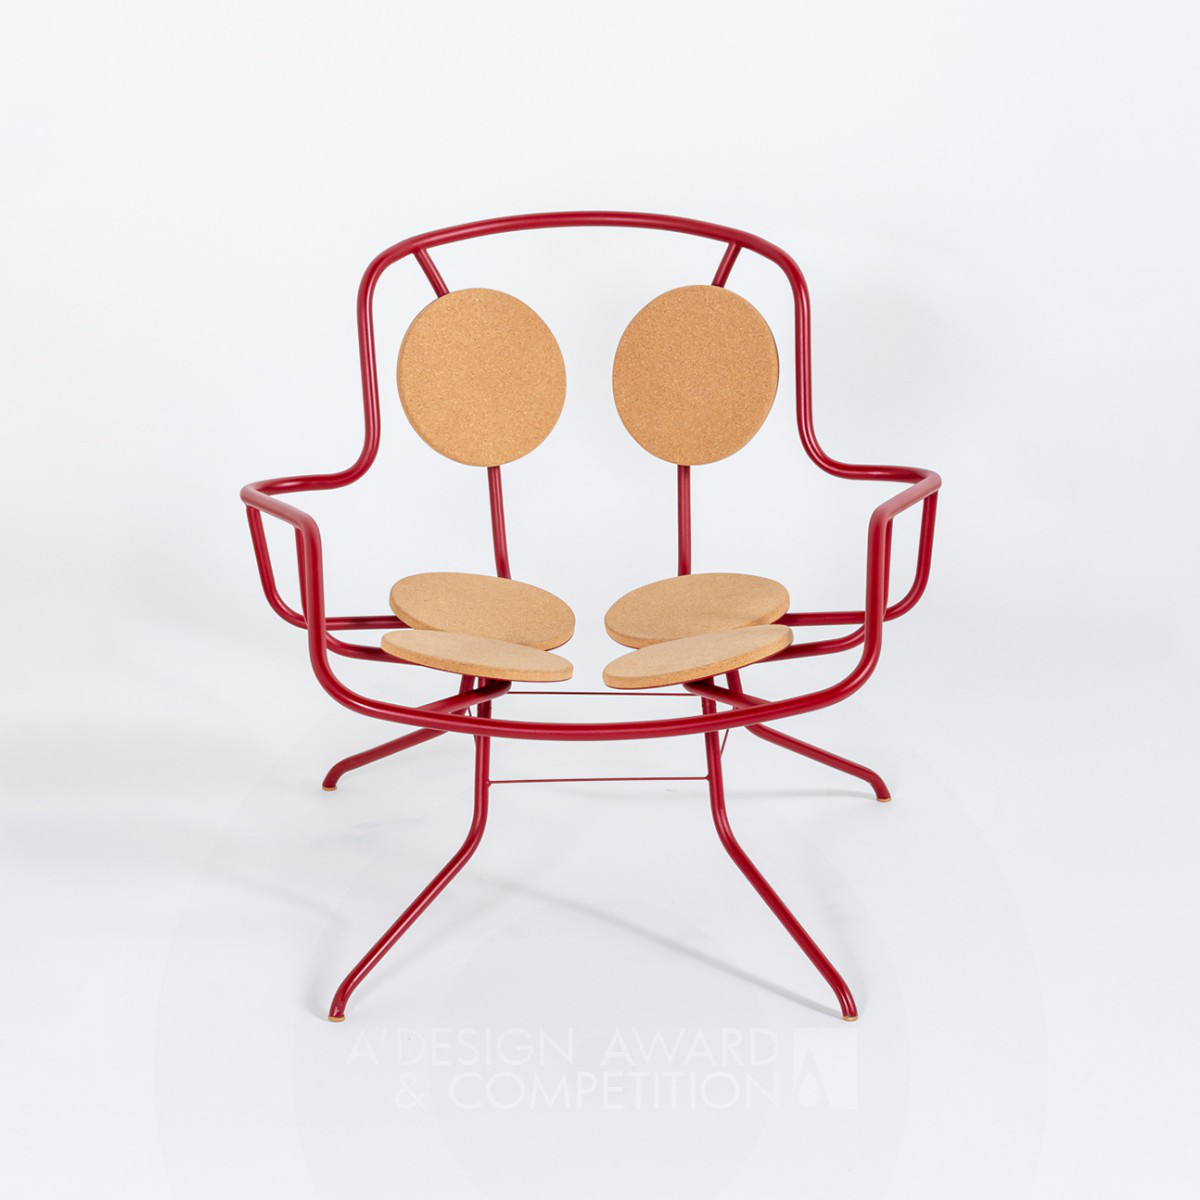 Haragana: Новый взгляд на дизайн кресла-лежанки